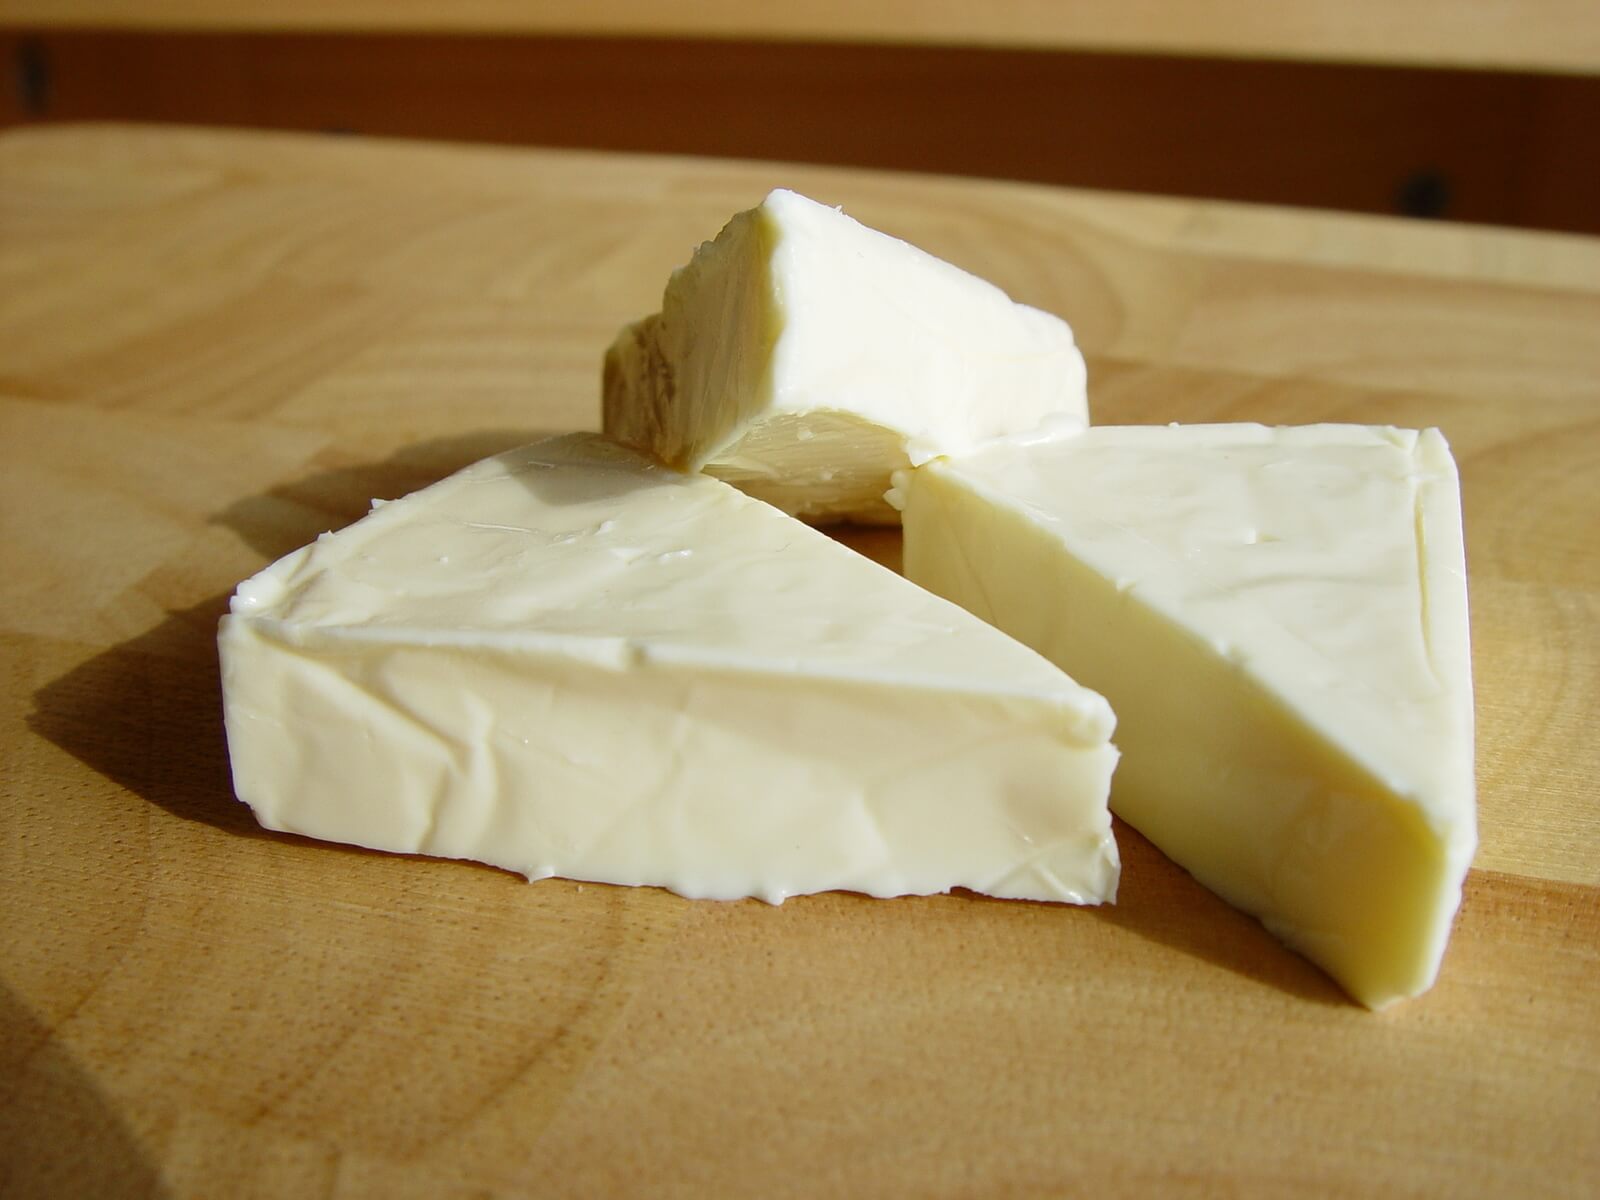 Плавленный сыр при грудном вскармливании